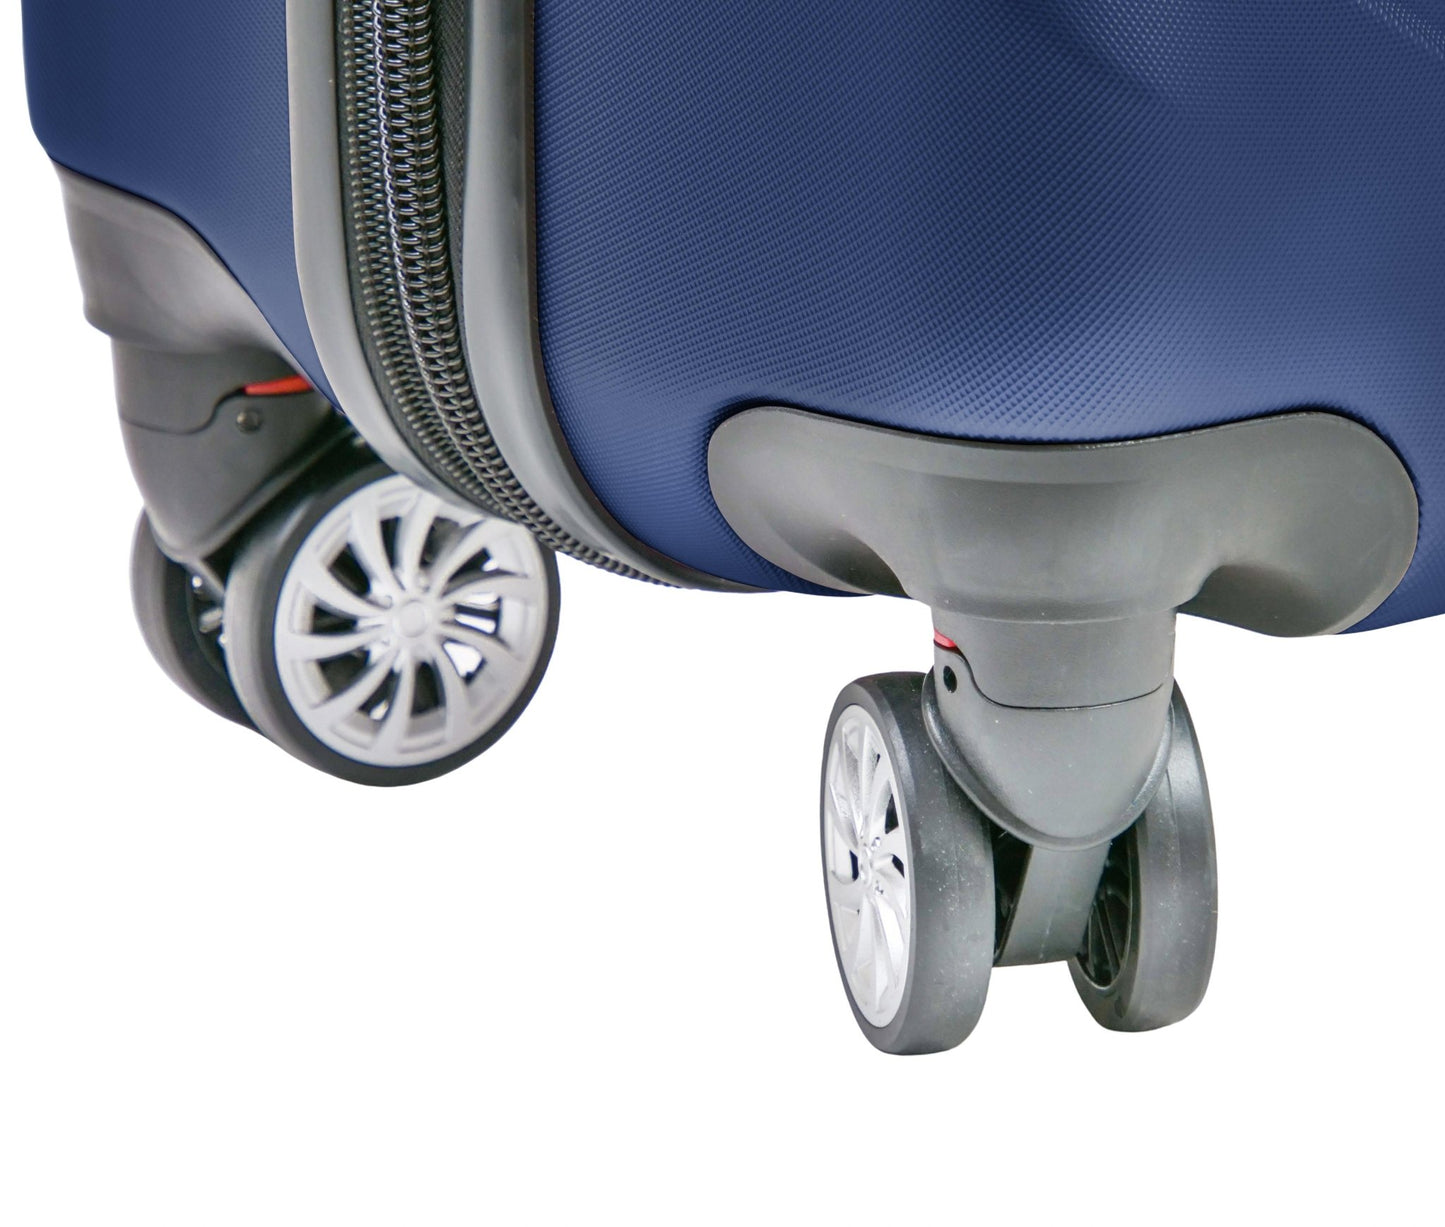 SANTA BARBARA POLO & RAQUET CLUB - מזוודה קשיחה בינונית 24" דגם 1701 בצבע נייבי - MASHBIR//365